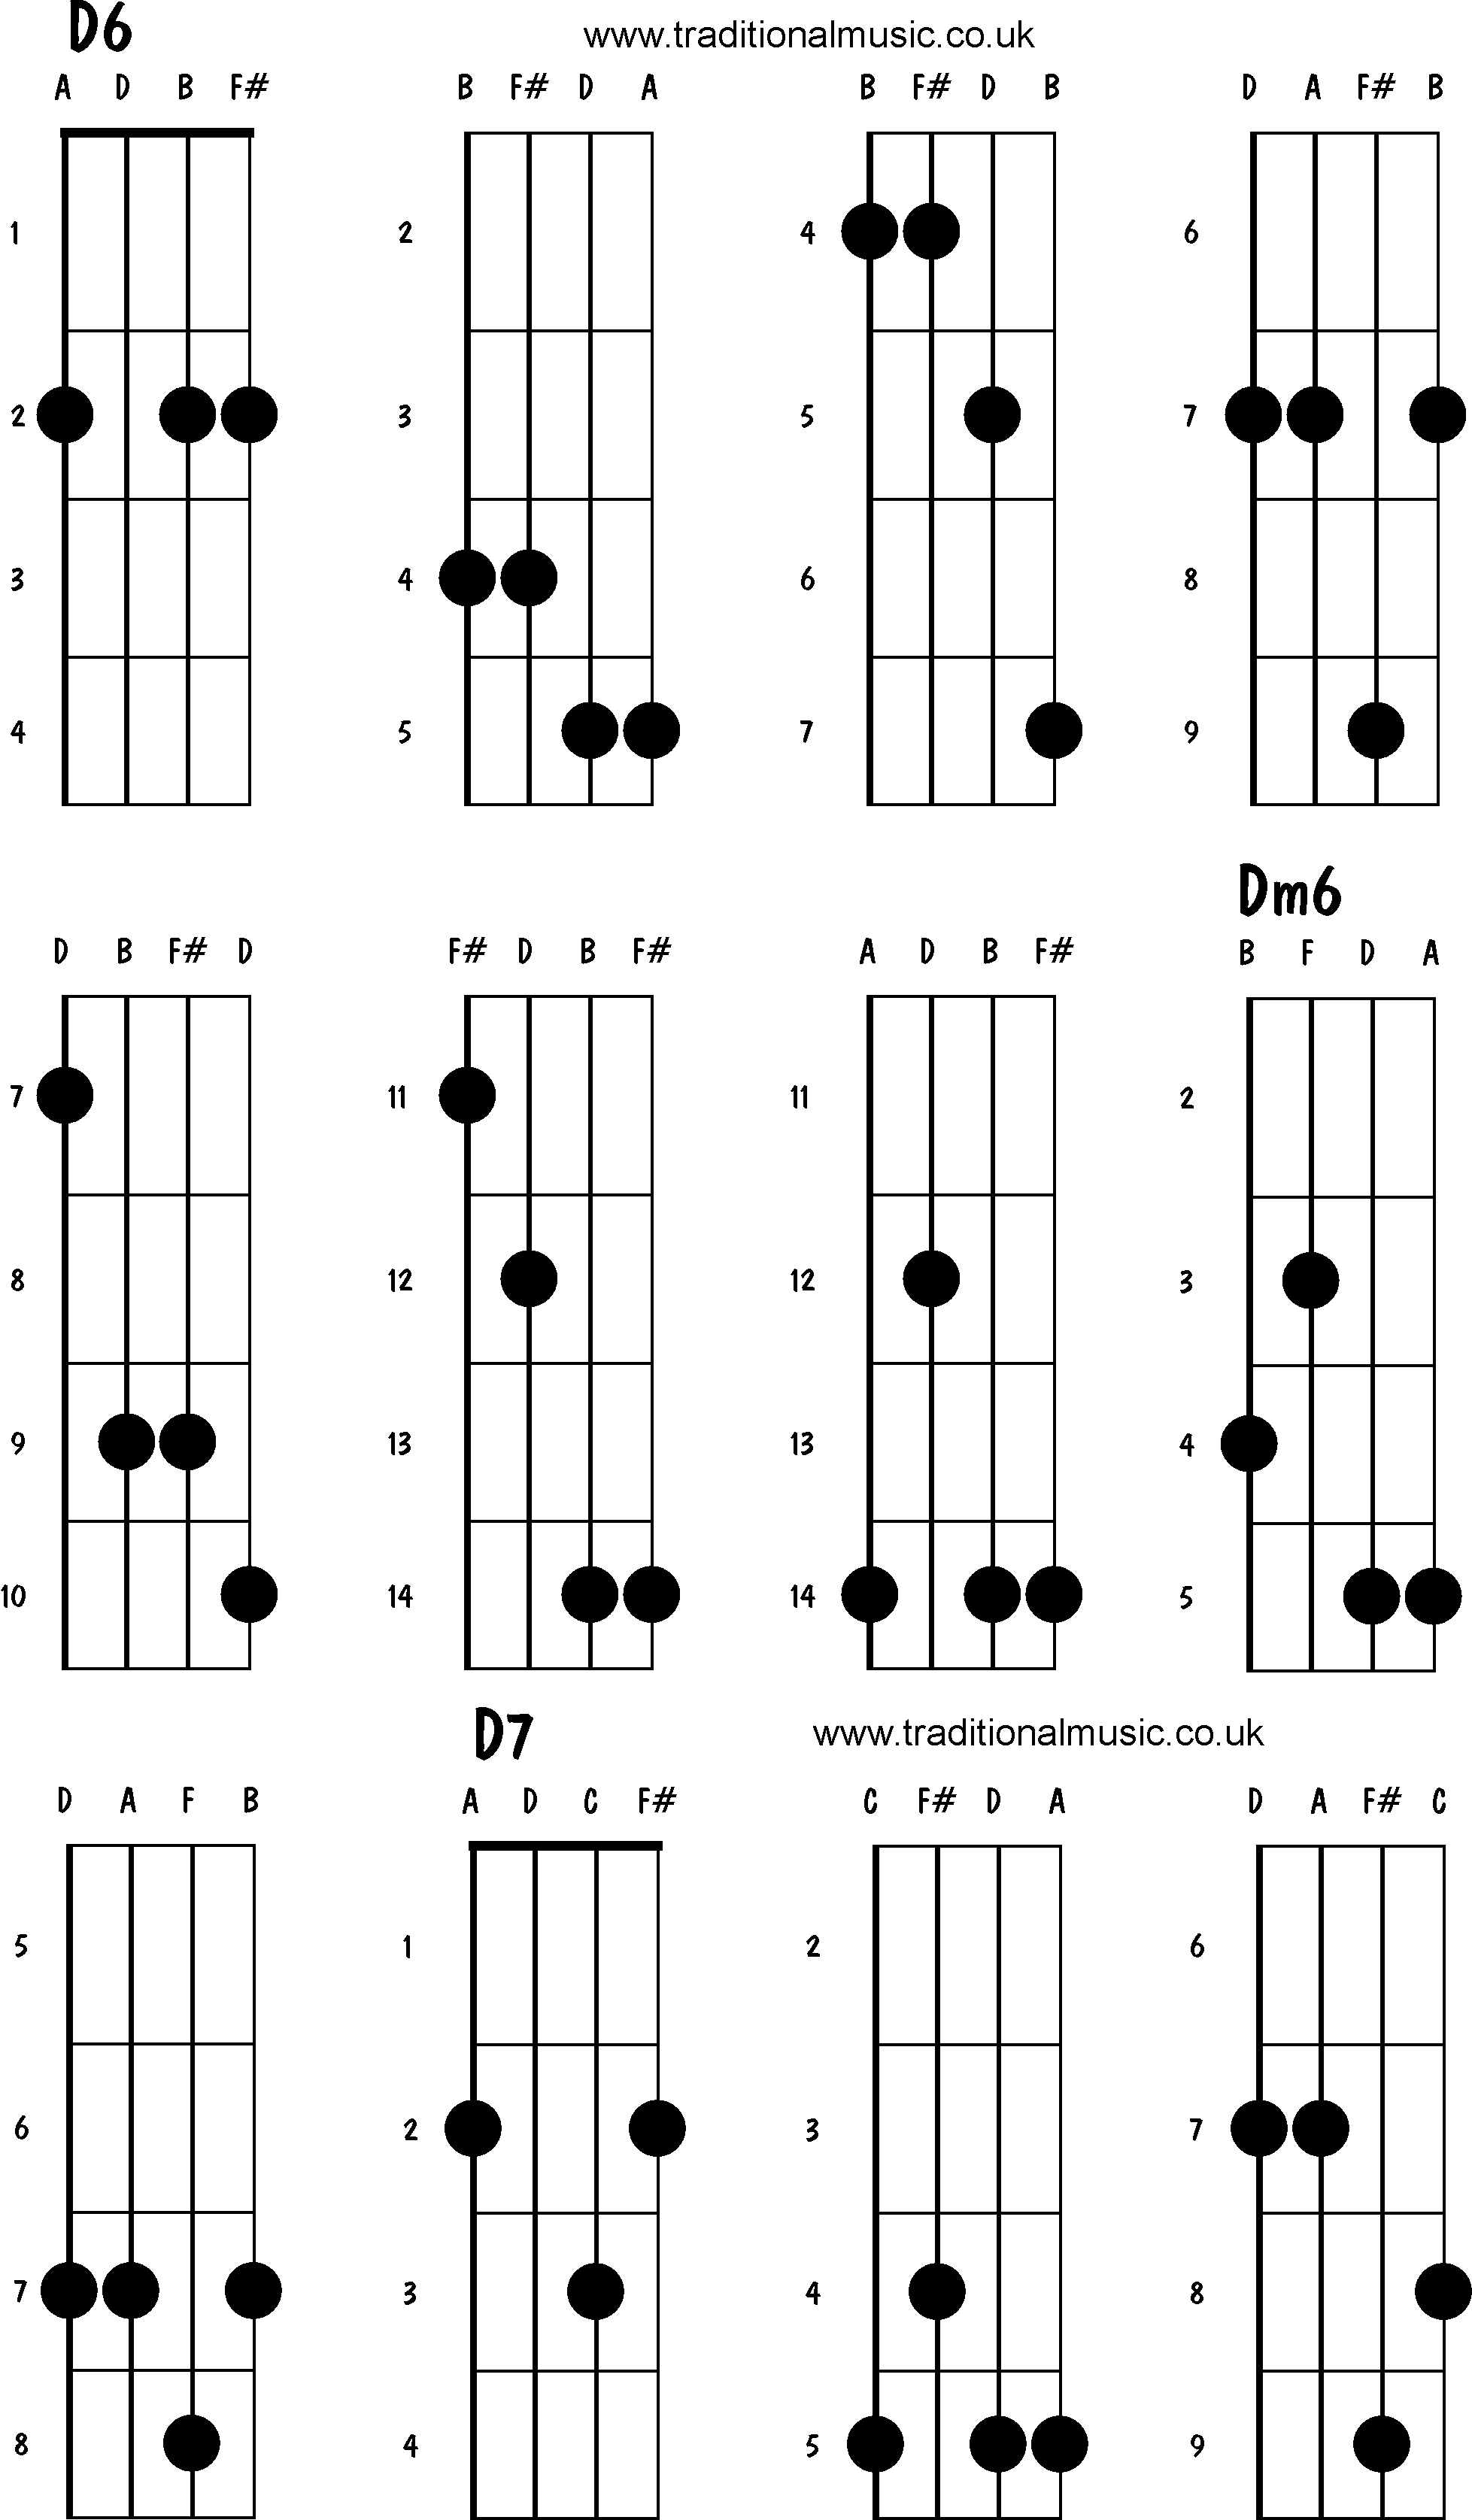 Advanced mandolin chords: D6, Dm6, D7